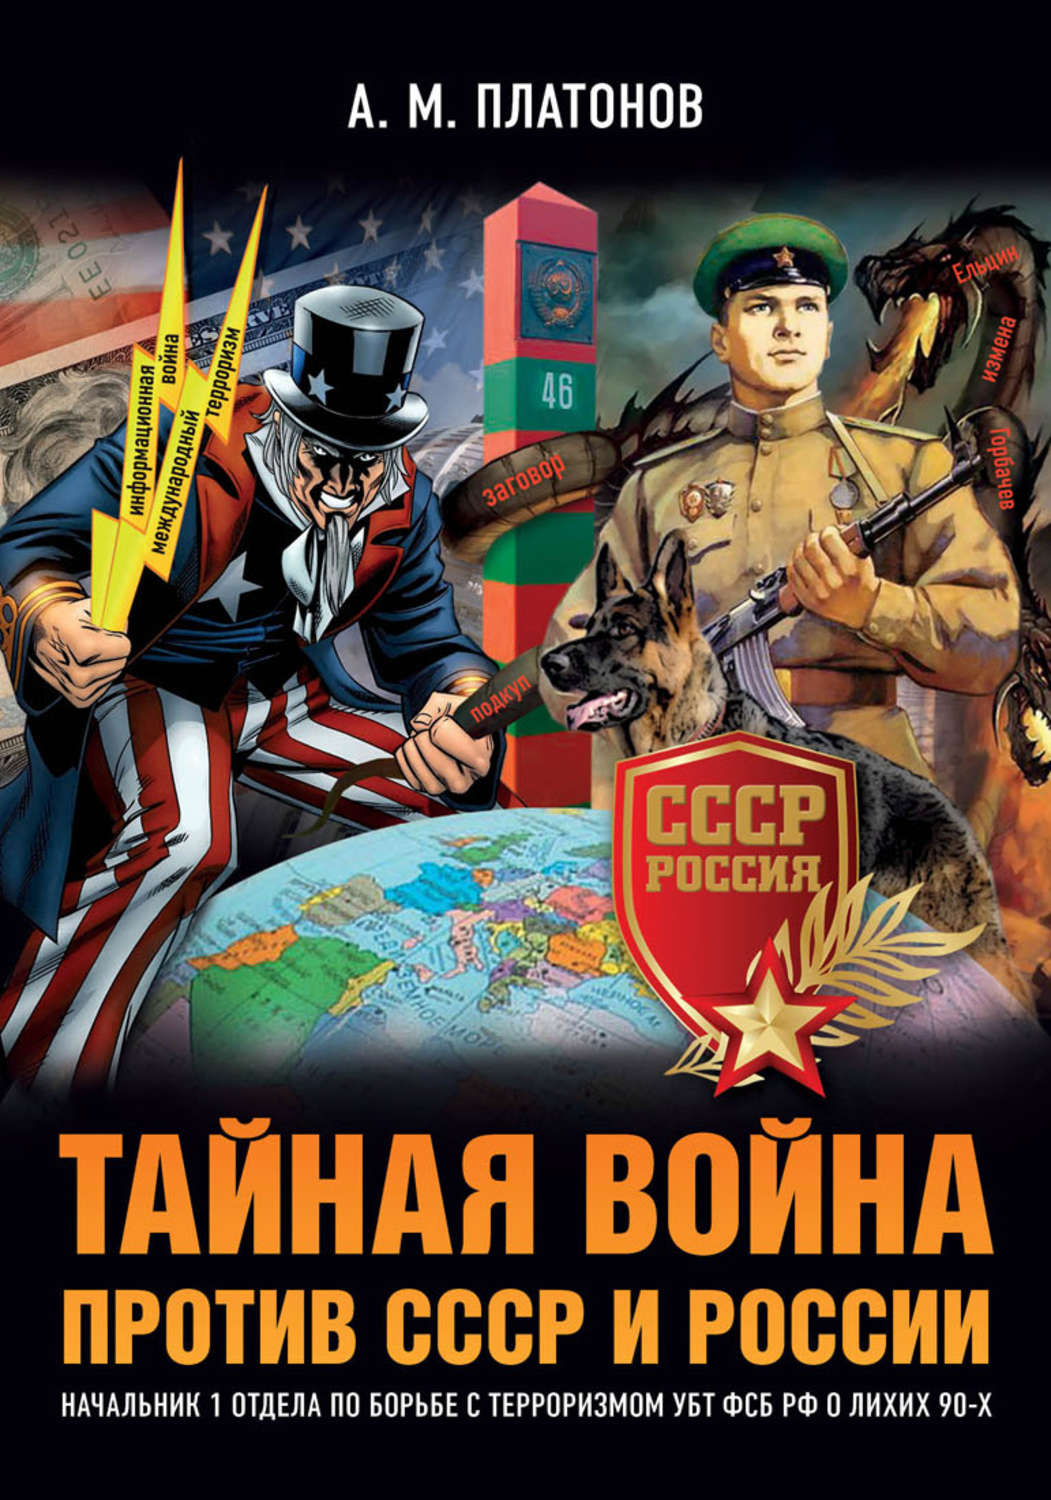 Тайны войны том 1. СССР против России.